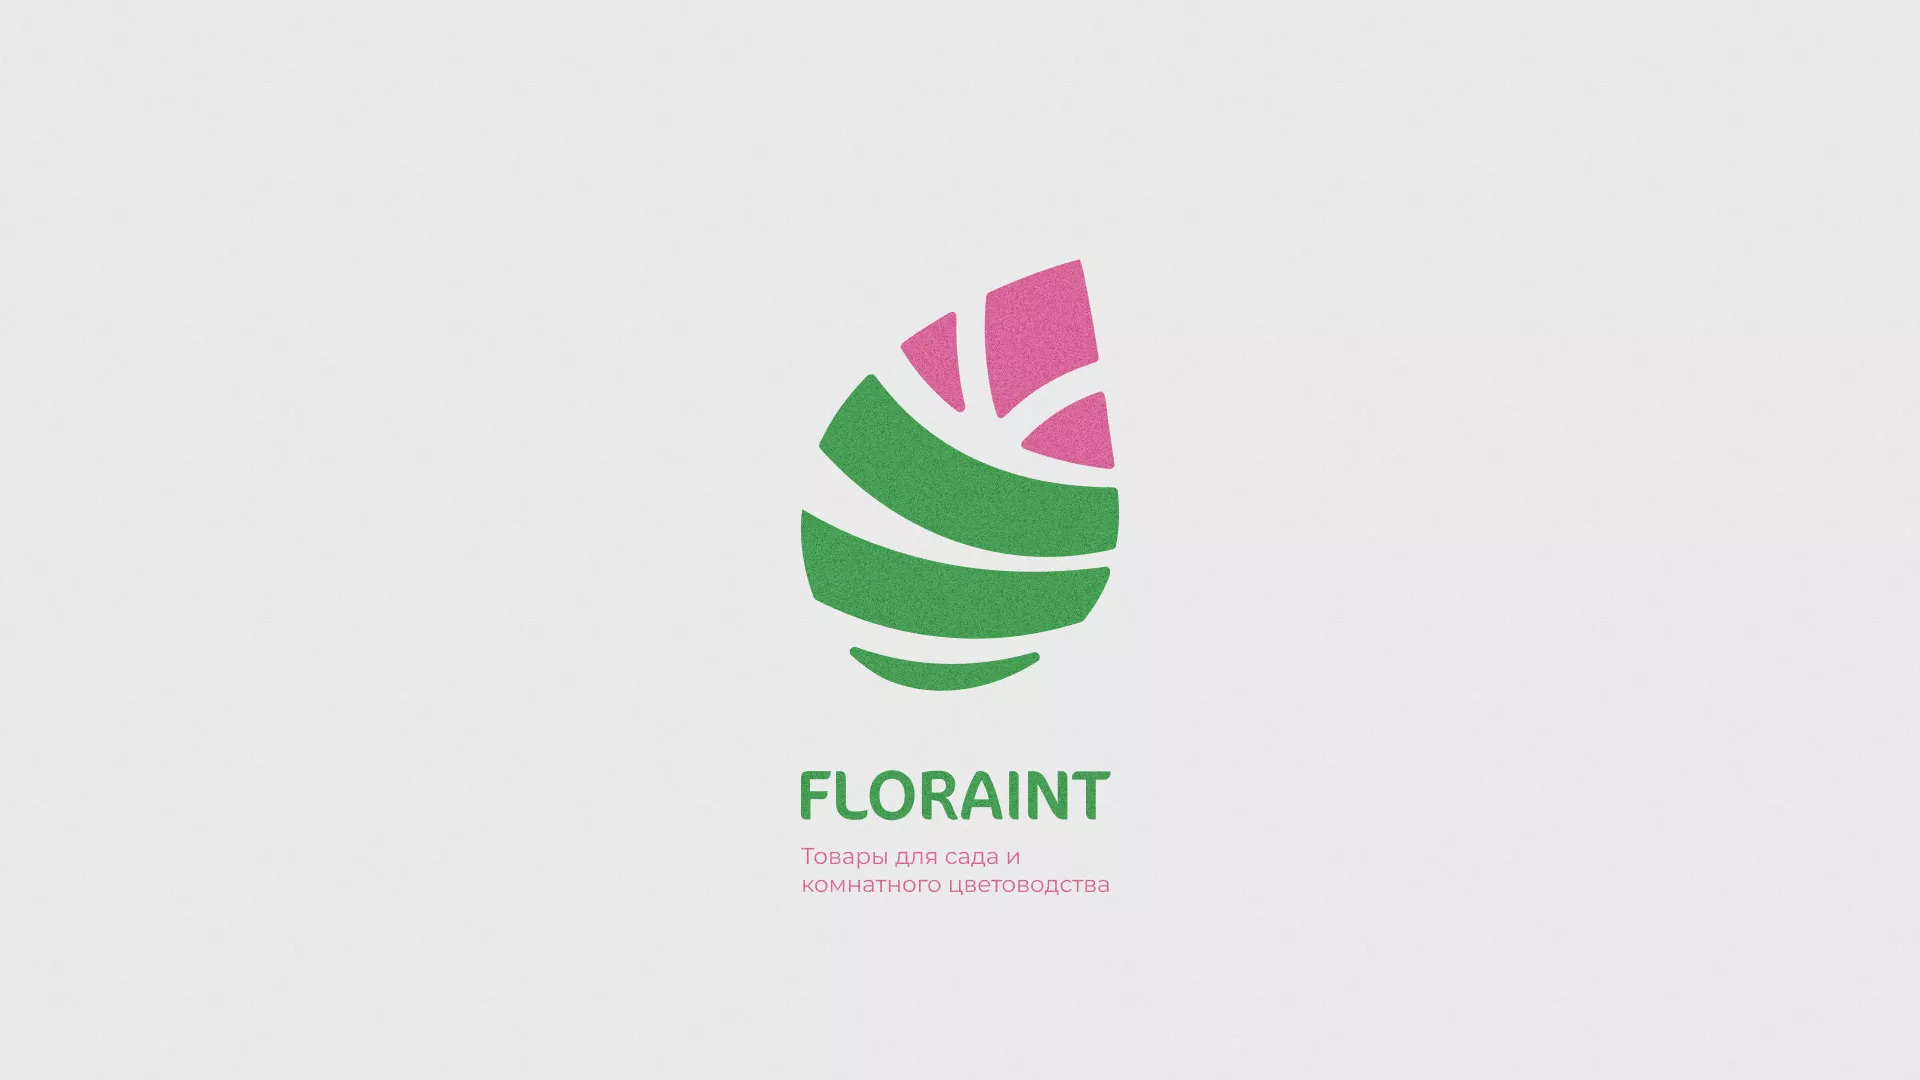 Разработка оформления профиля Instagram для магазина «Floraint» в Козловке